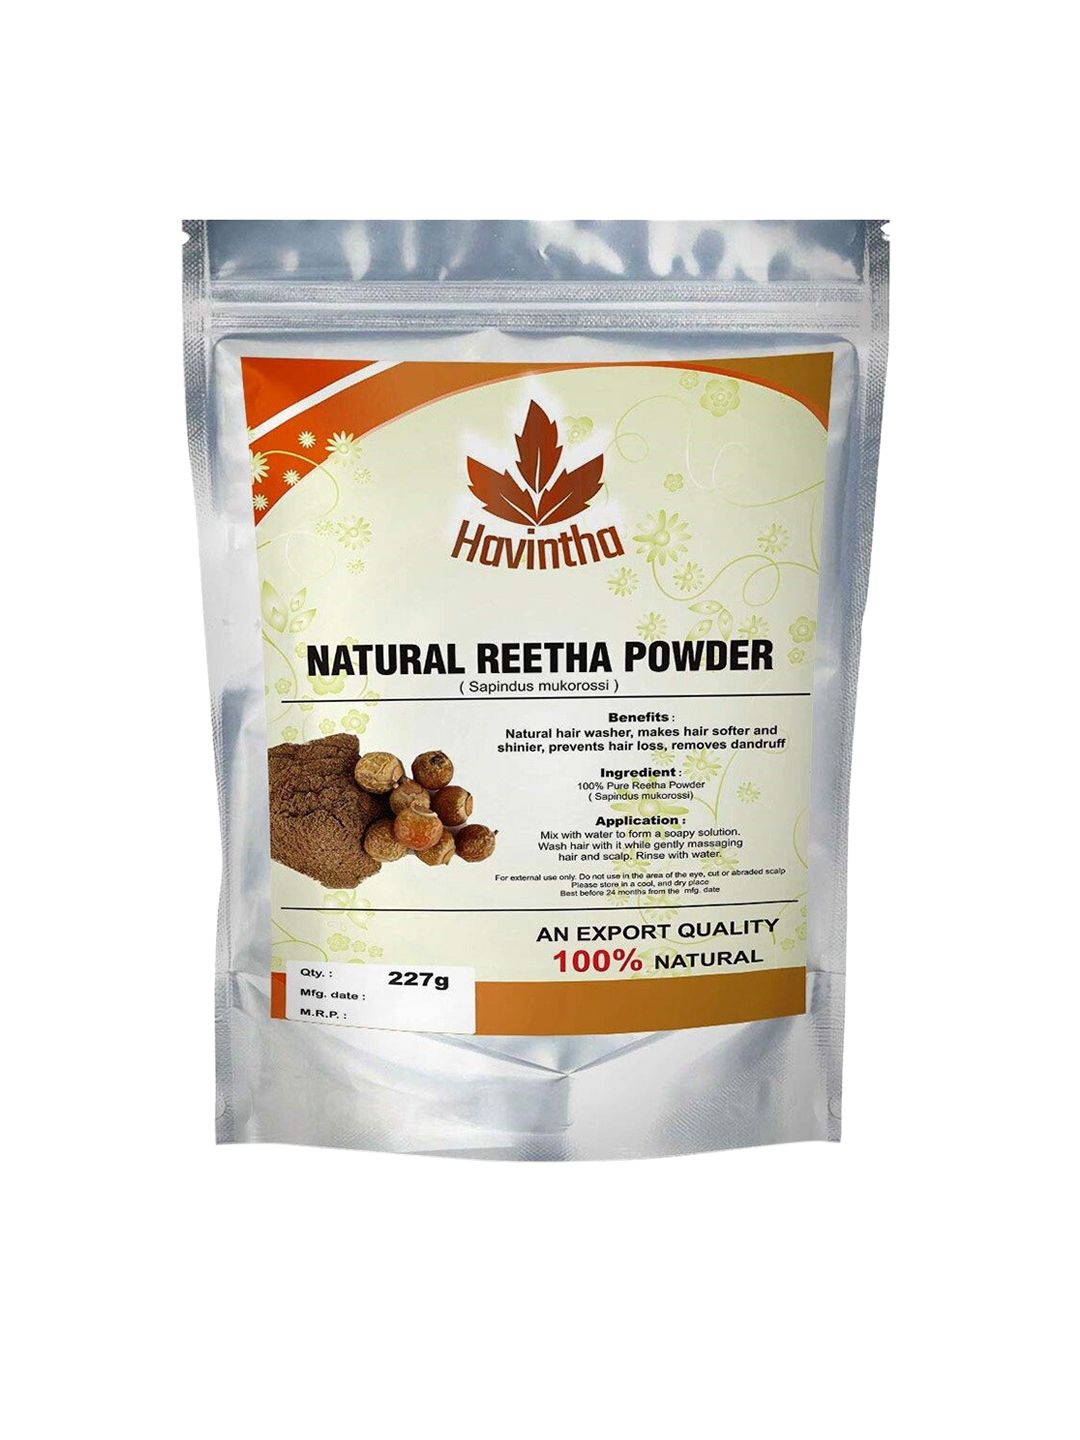 Havintha Natural Reetha Shampoo Powder For Hair Growth & Prevents Hair Fall - 227 Gm Price in India